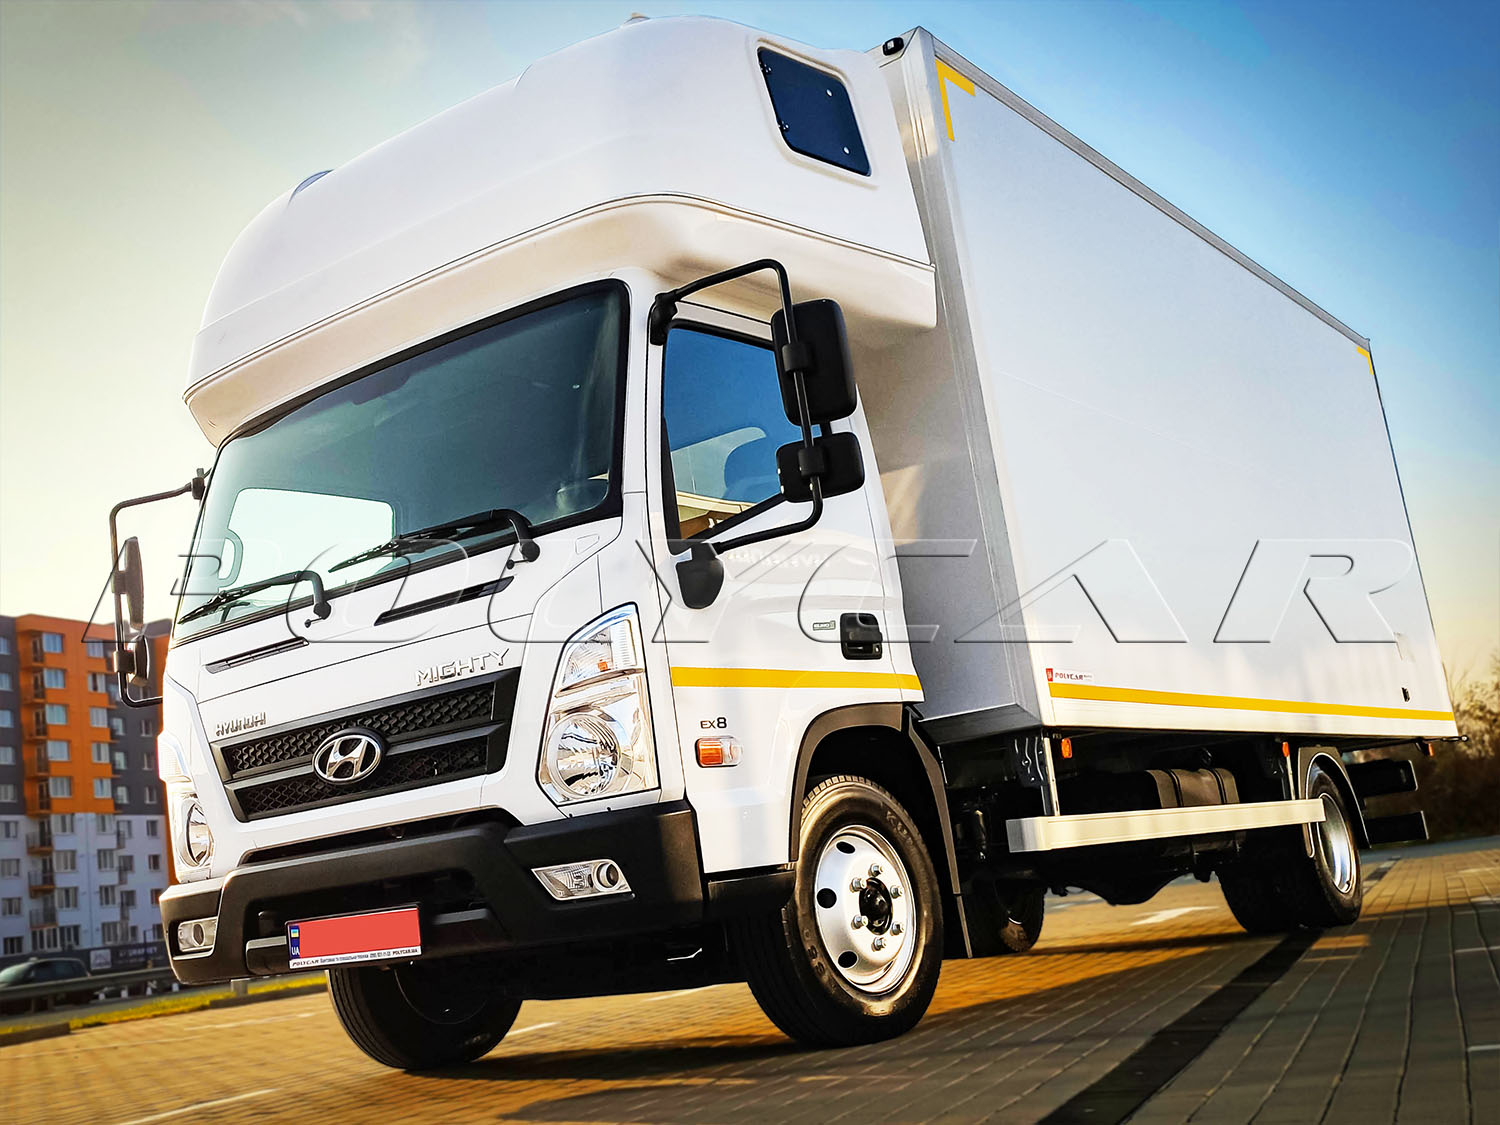 Завершено виробництво та передача клієнту партії фургонів на Hyundai EX8.